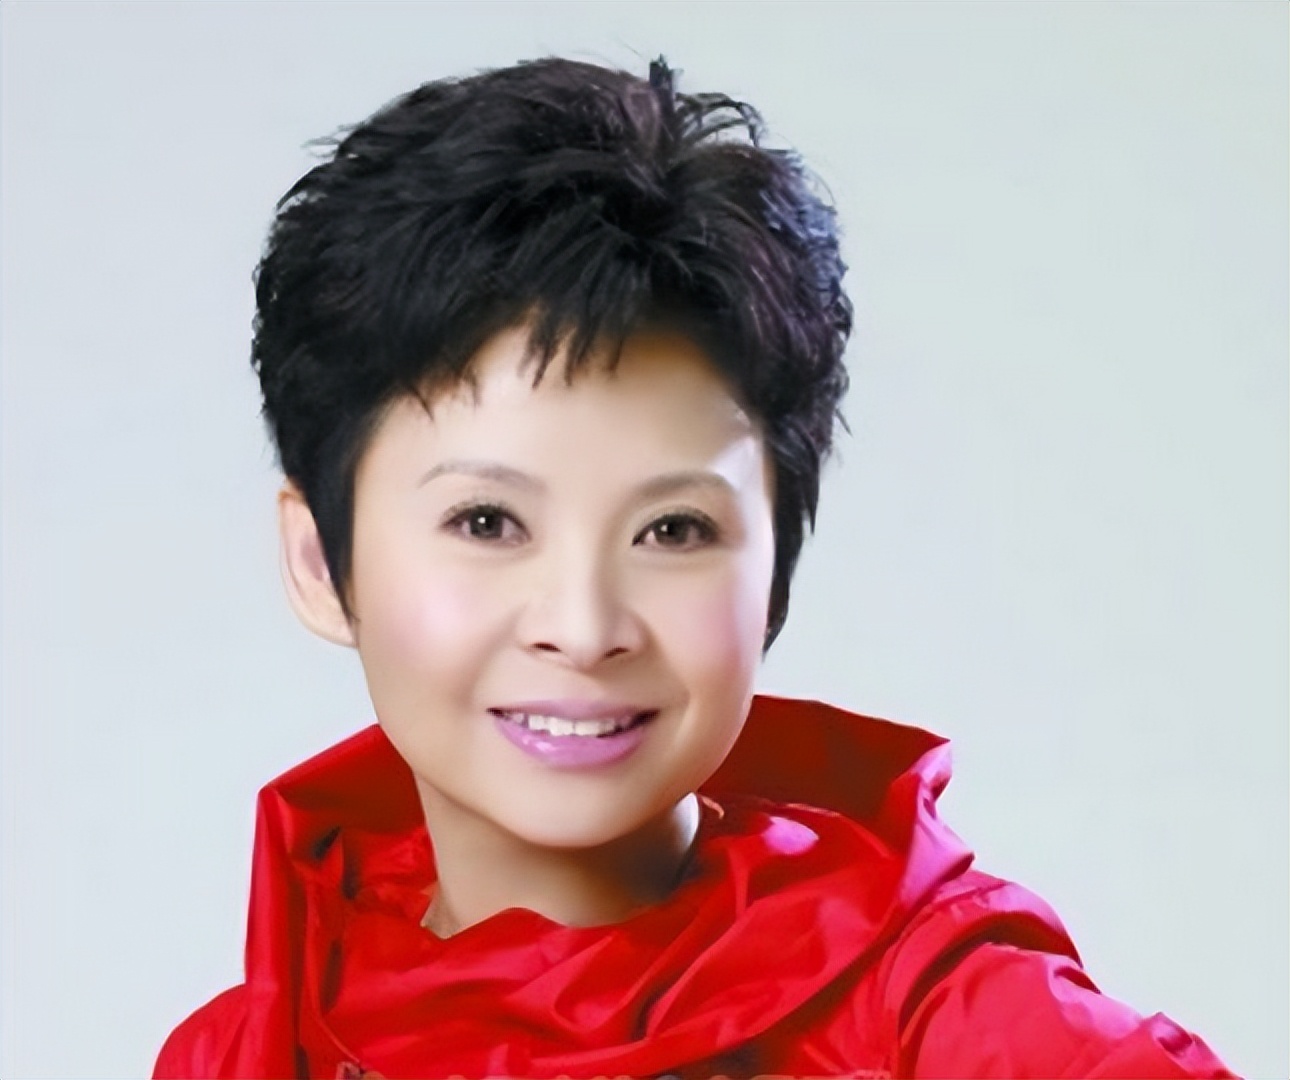 中国“殿堂级”民歌唱家，5连冠至今无人打破，与初恋恩爱33年